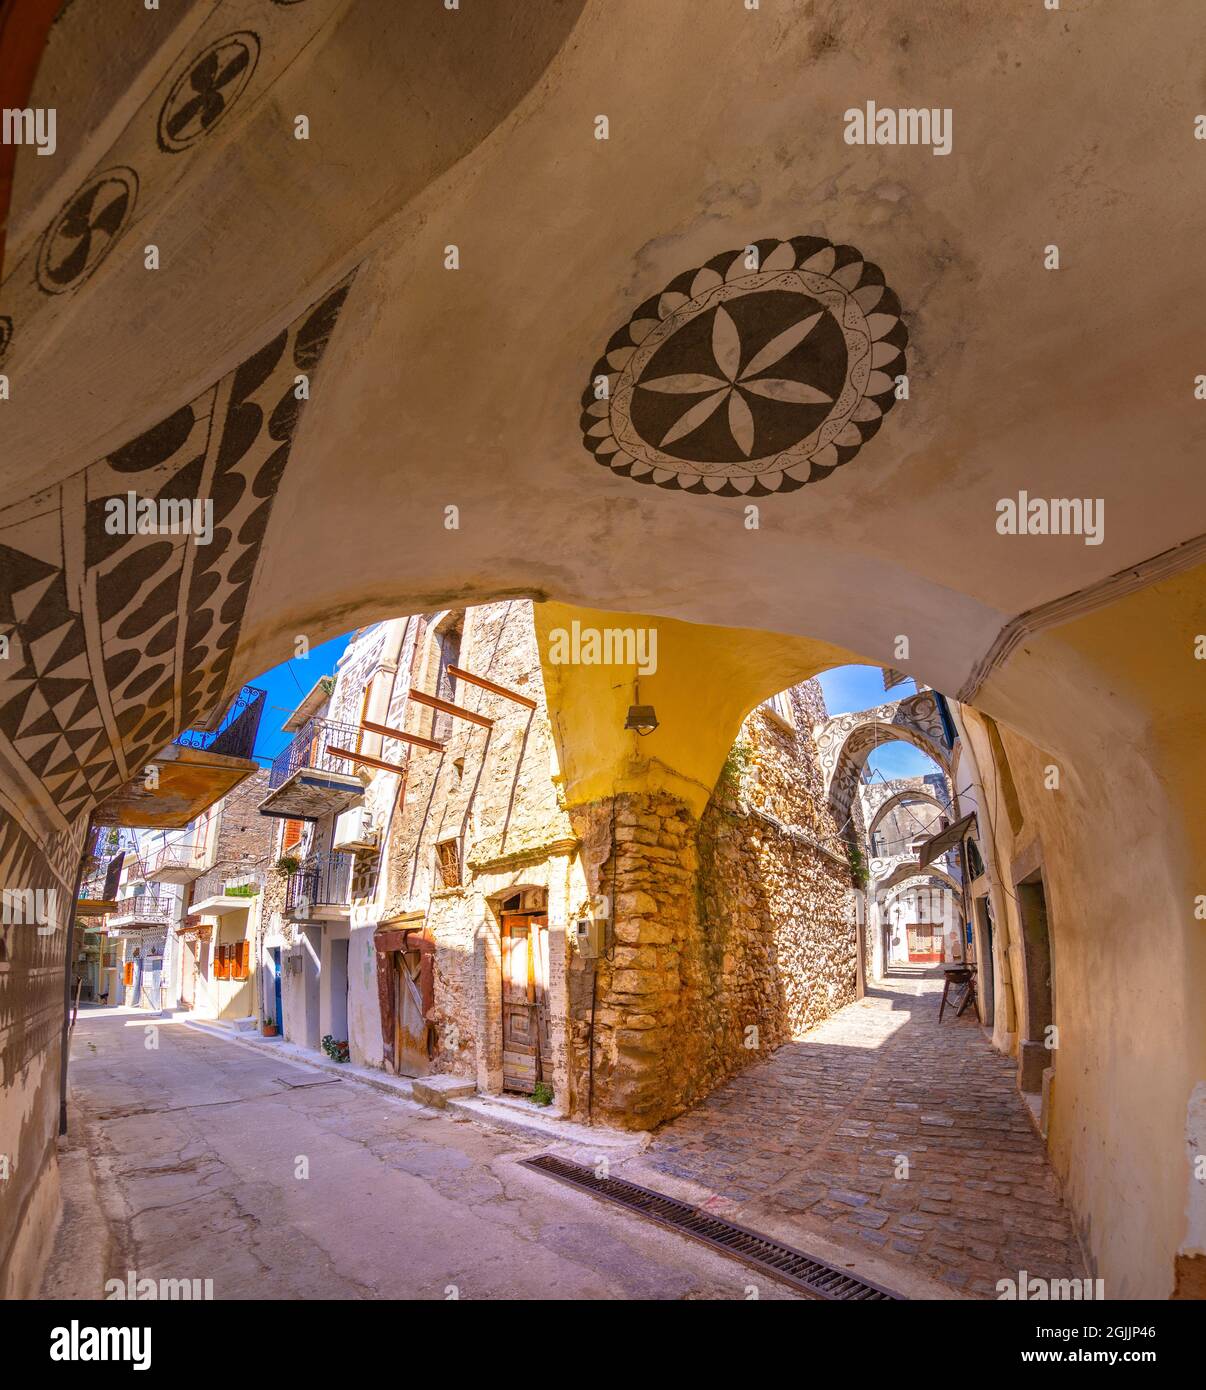 Maisons traditionnelles et églises décorées avec les célèbres motifs géométriques de rayures dans le village médiéval de mastic de Pyrgi, île de Chios, Grèce. Banque D'Images